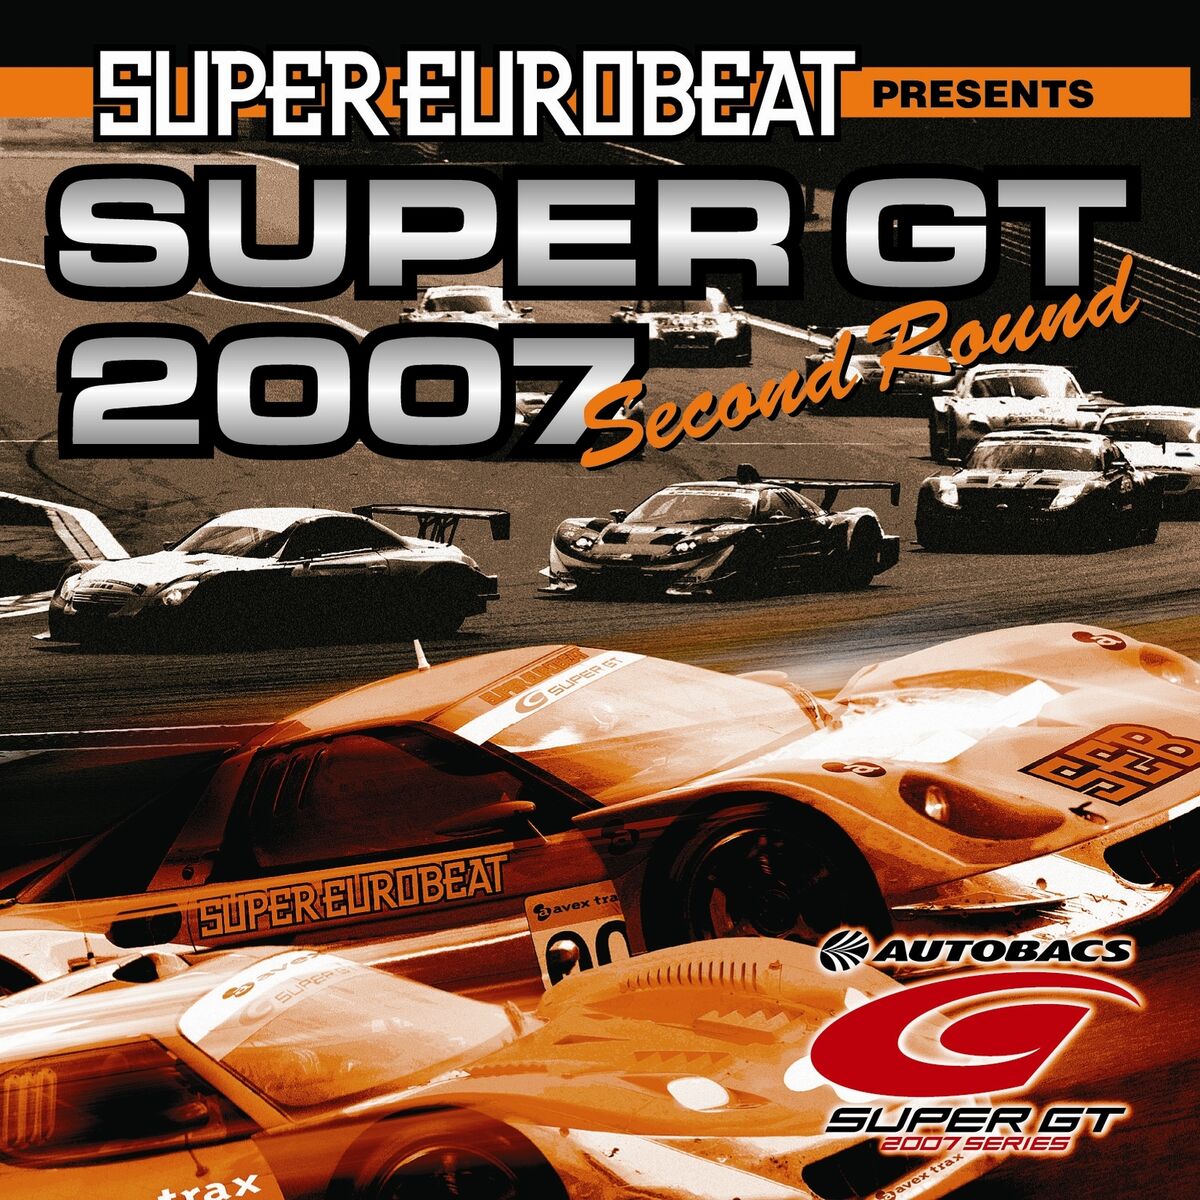 Super Eurobeat Presents Super GT 2007 ~Second Round 